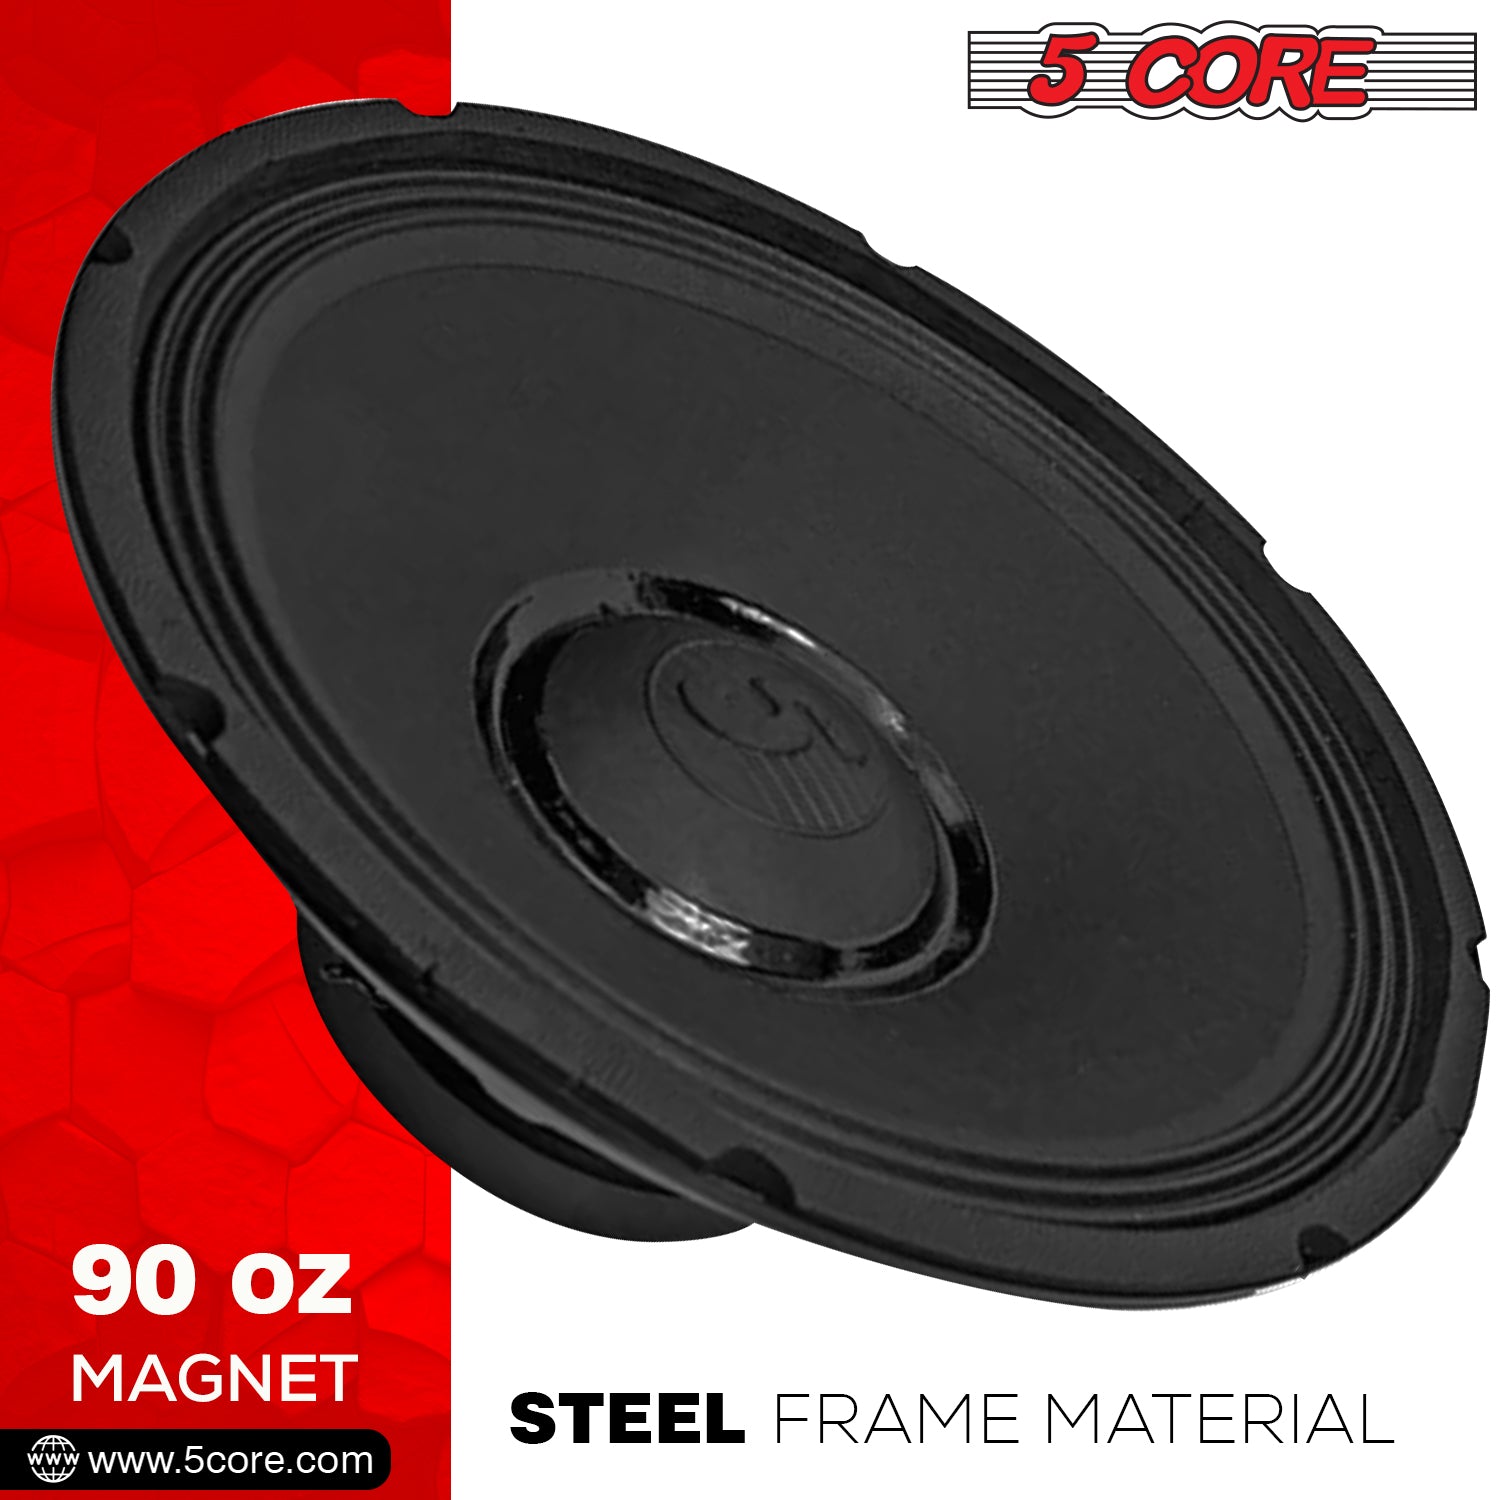 DJ speaker 90 oz magnet with steel frame.